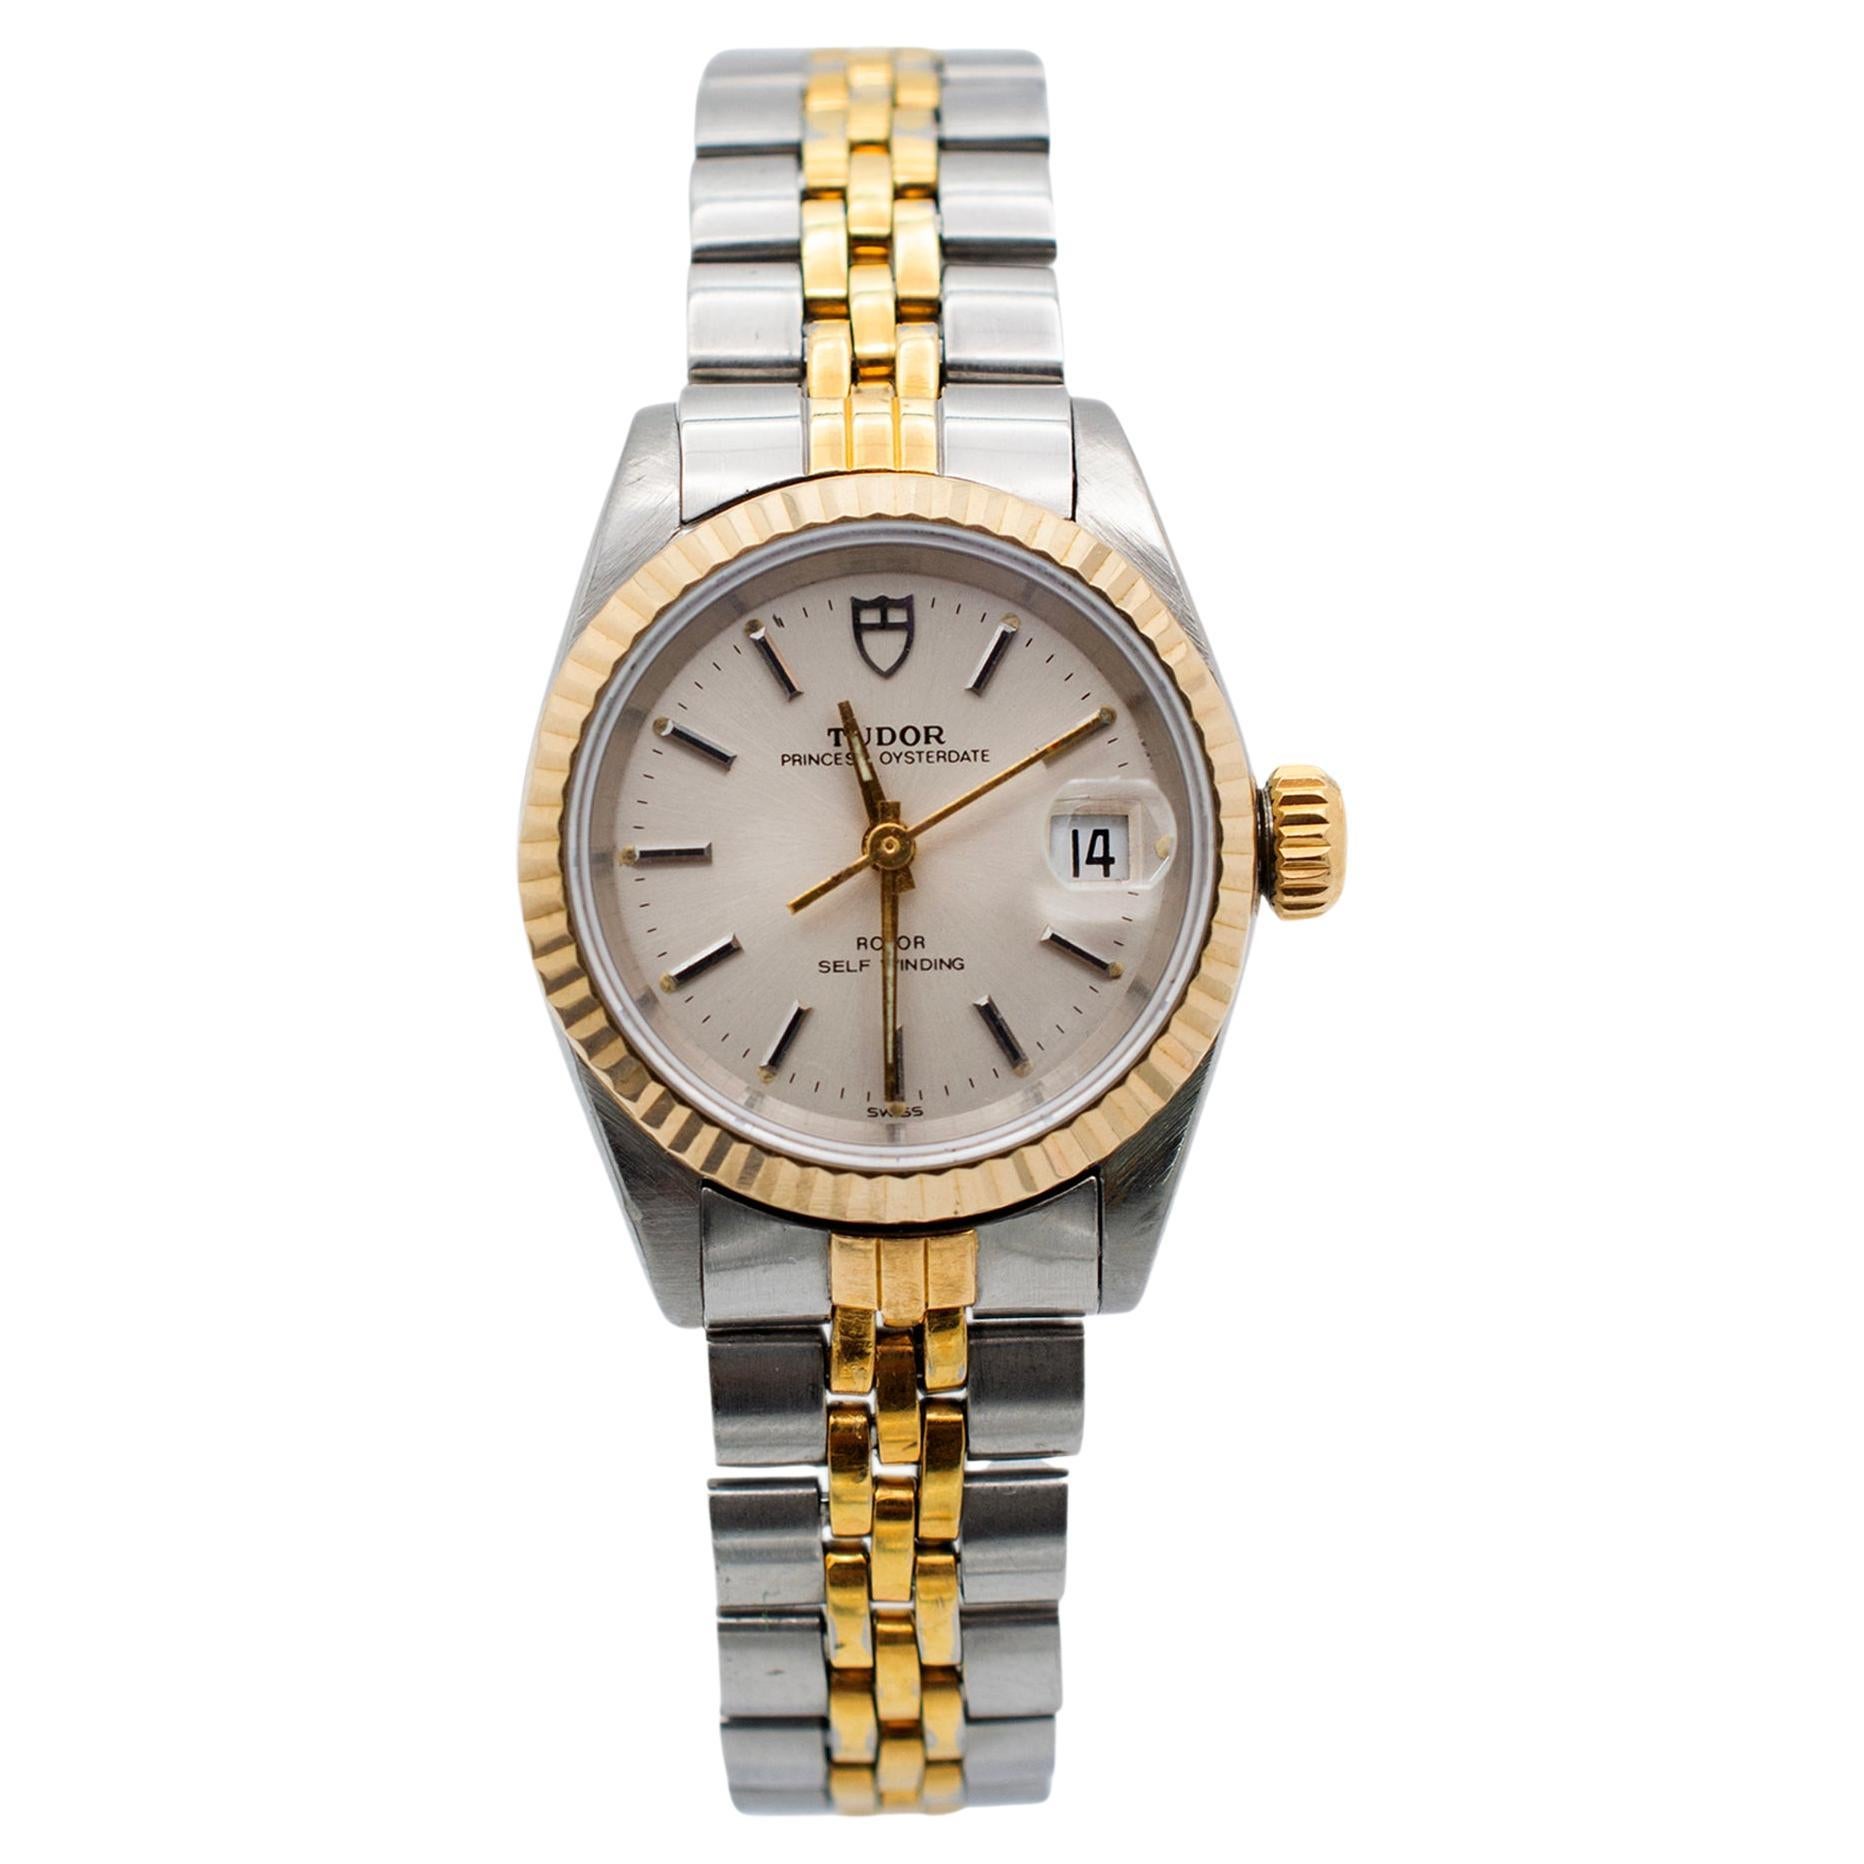 Vintage 1989 Tudor Princess Oysterdate 25MM #92413N Stainless Steel Watch